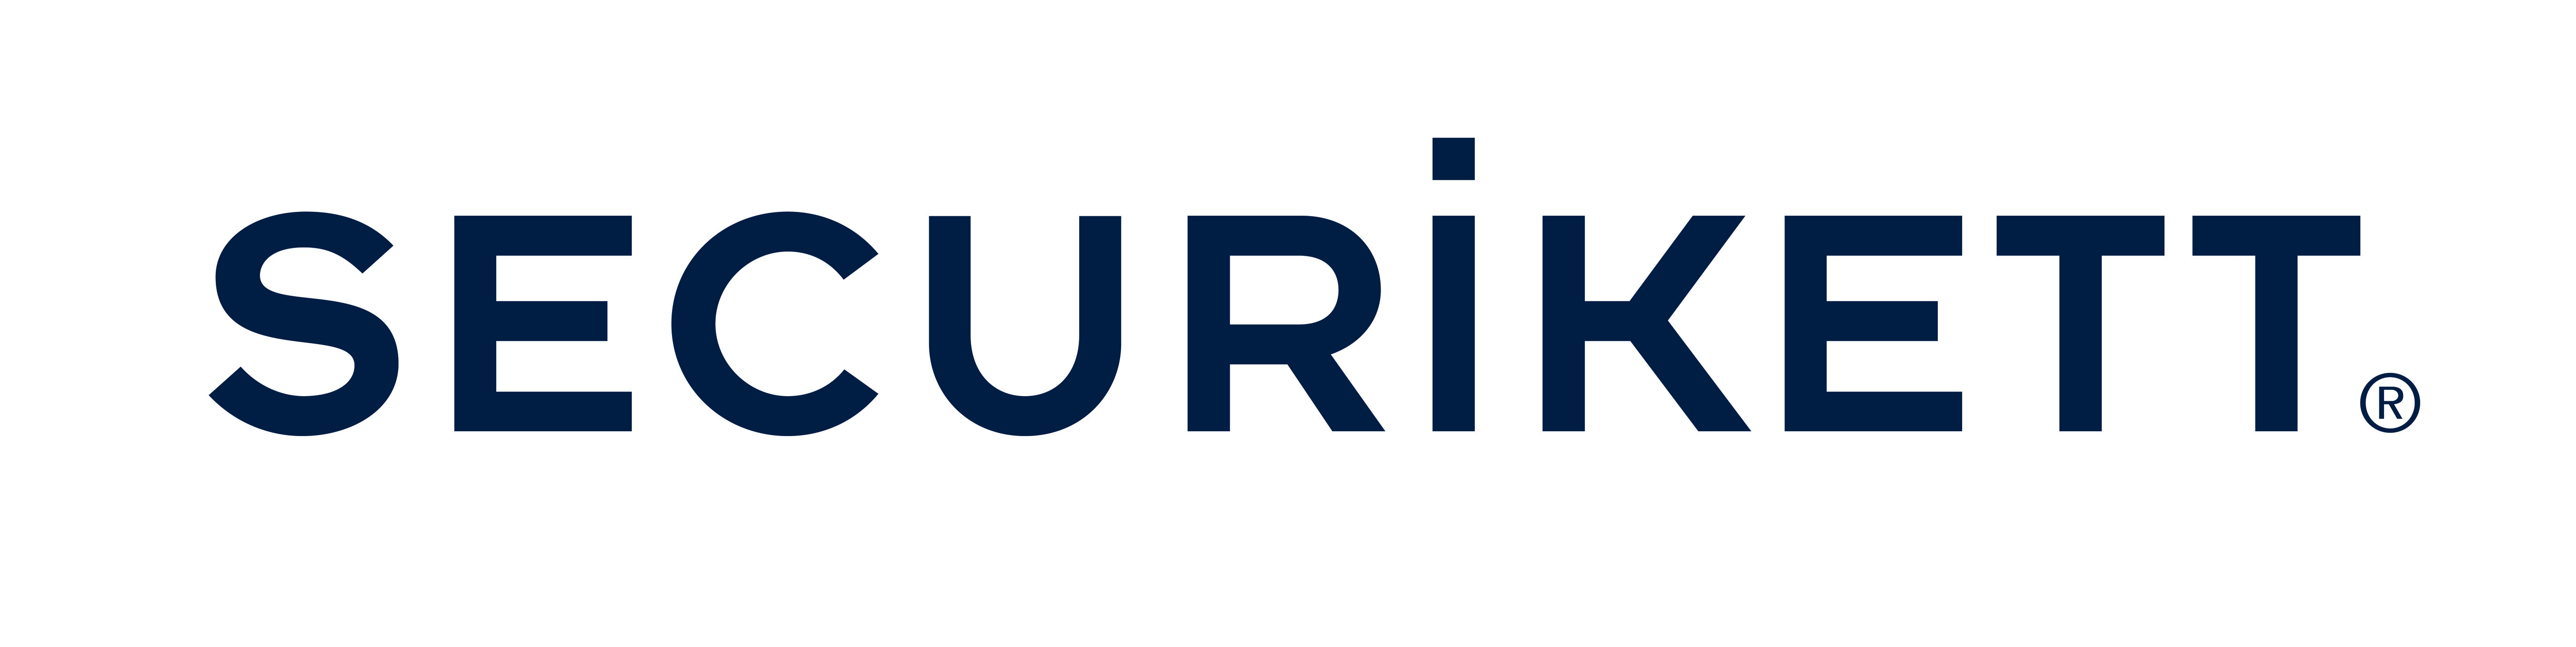 SECURIKETT Ulrich & Horn GmbH